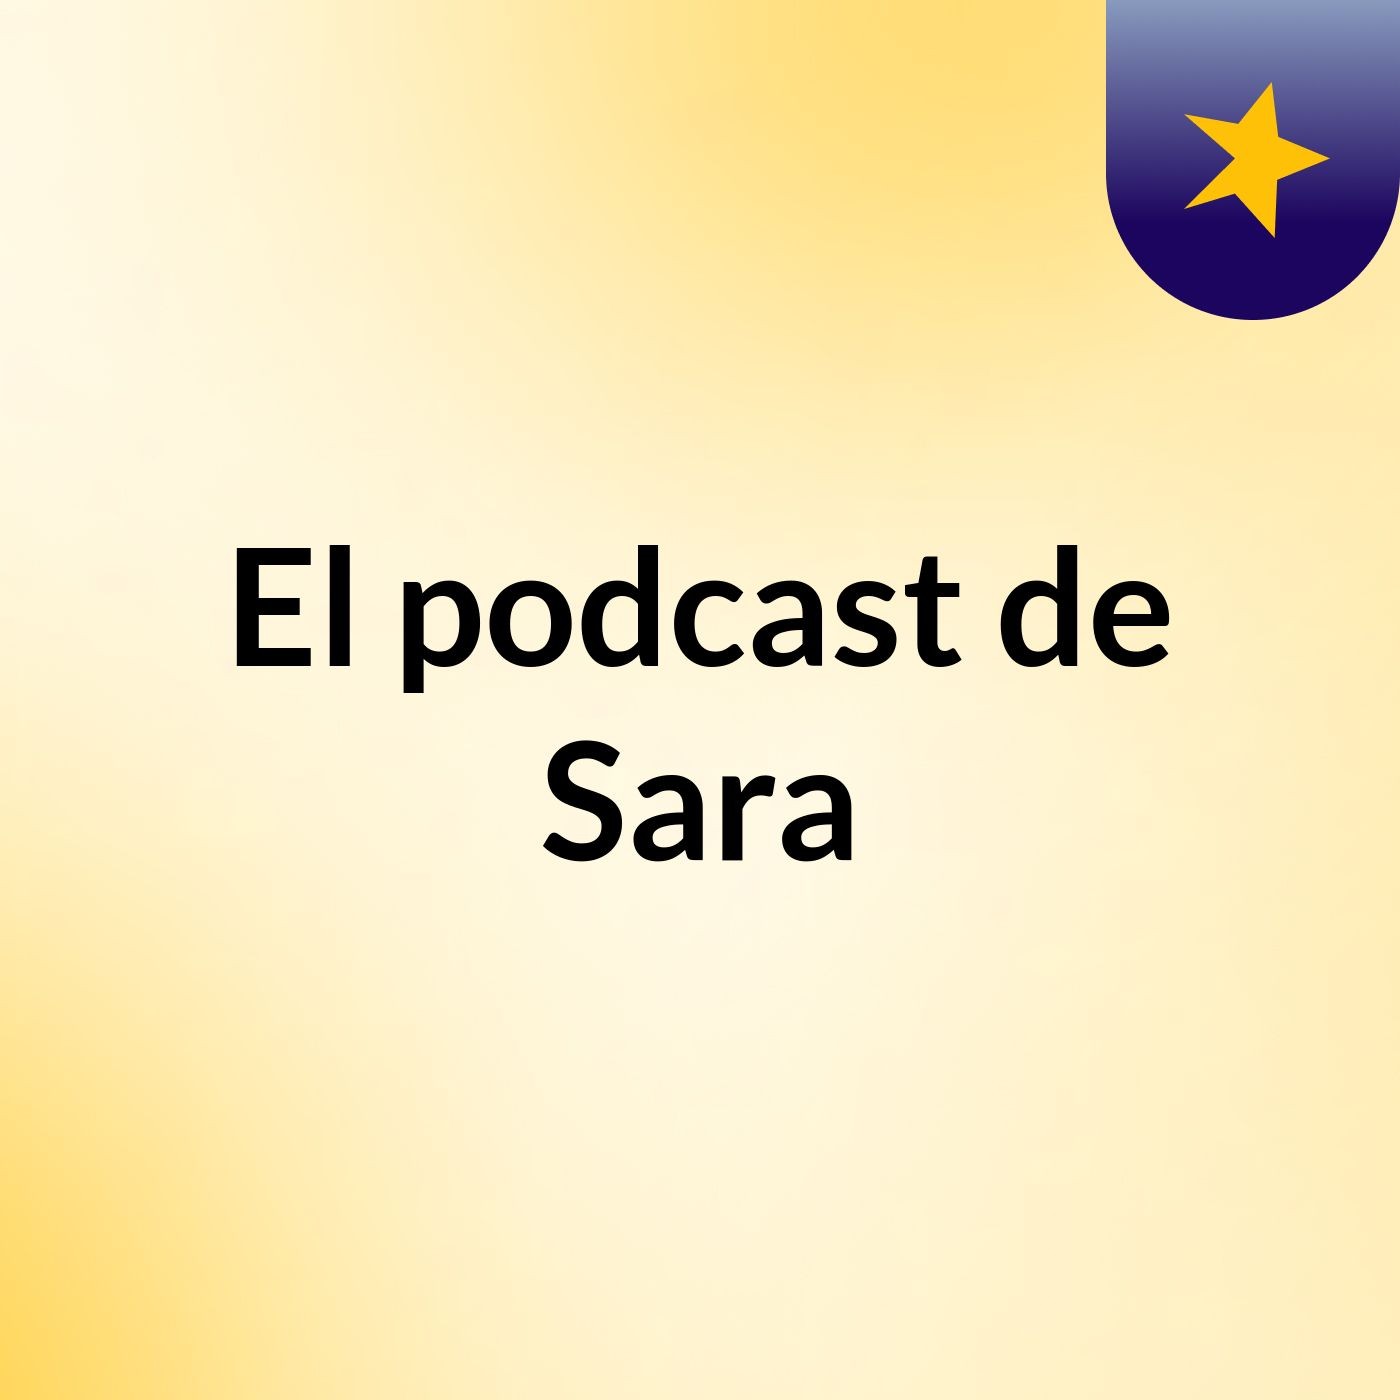 El podcast de Sara